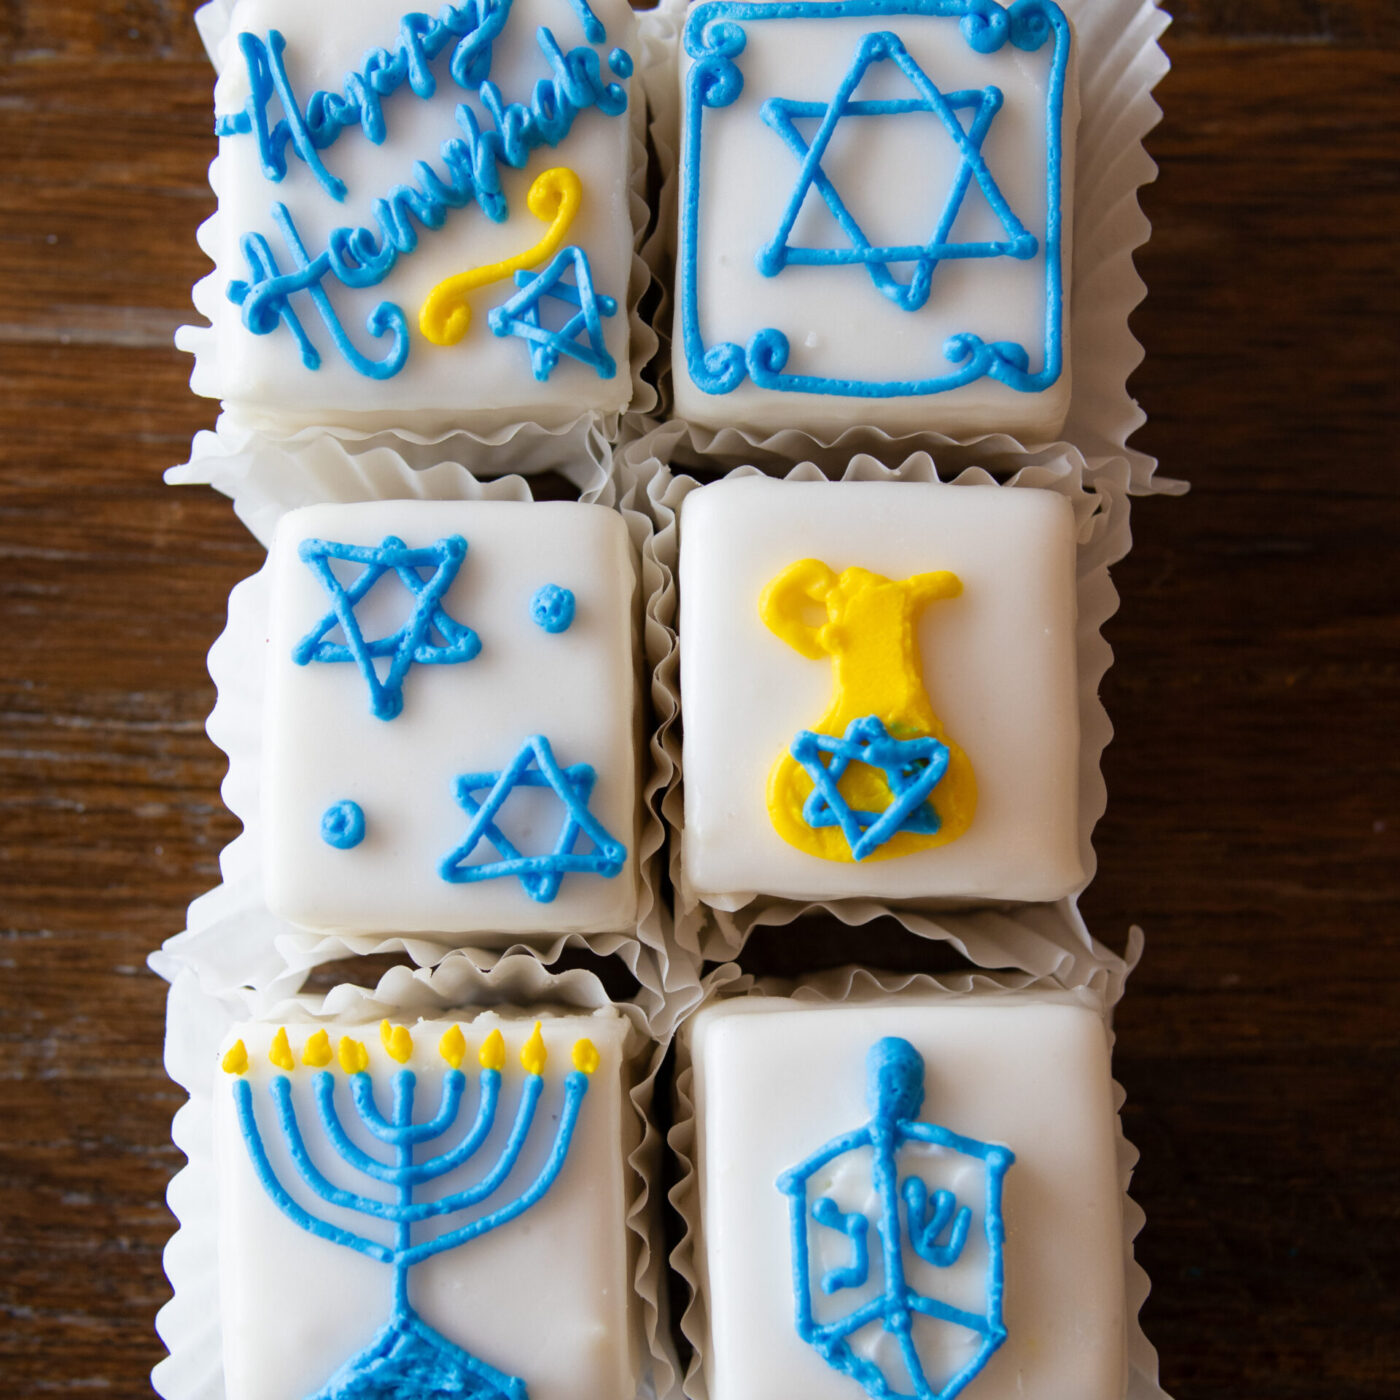 star of david cake for Hanukkah  Chanukah party, Hanukkah food